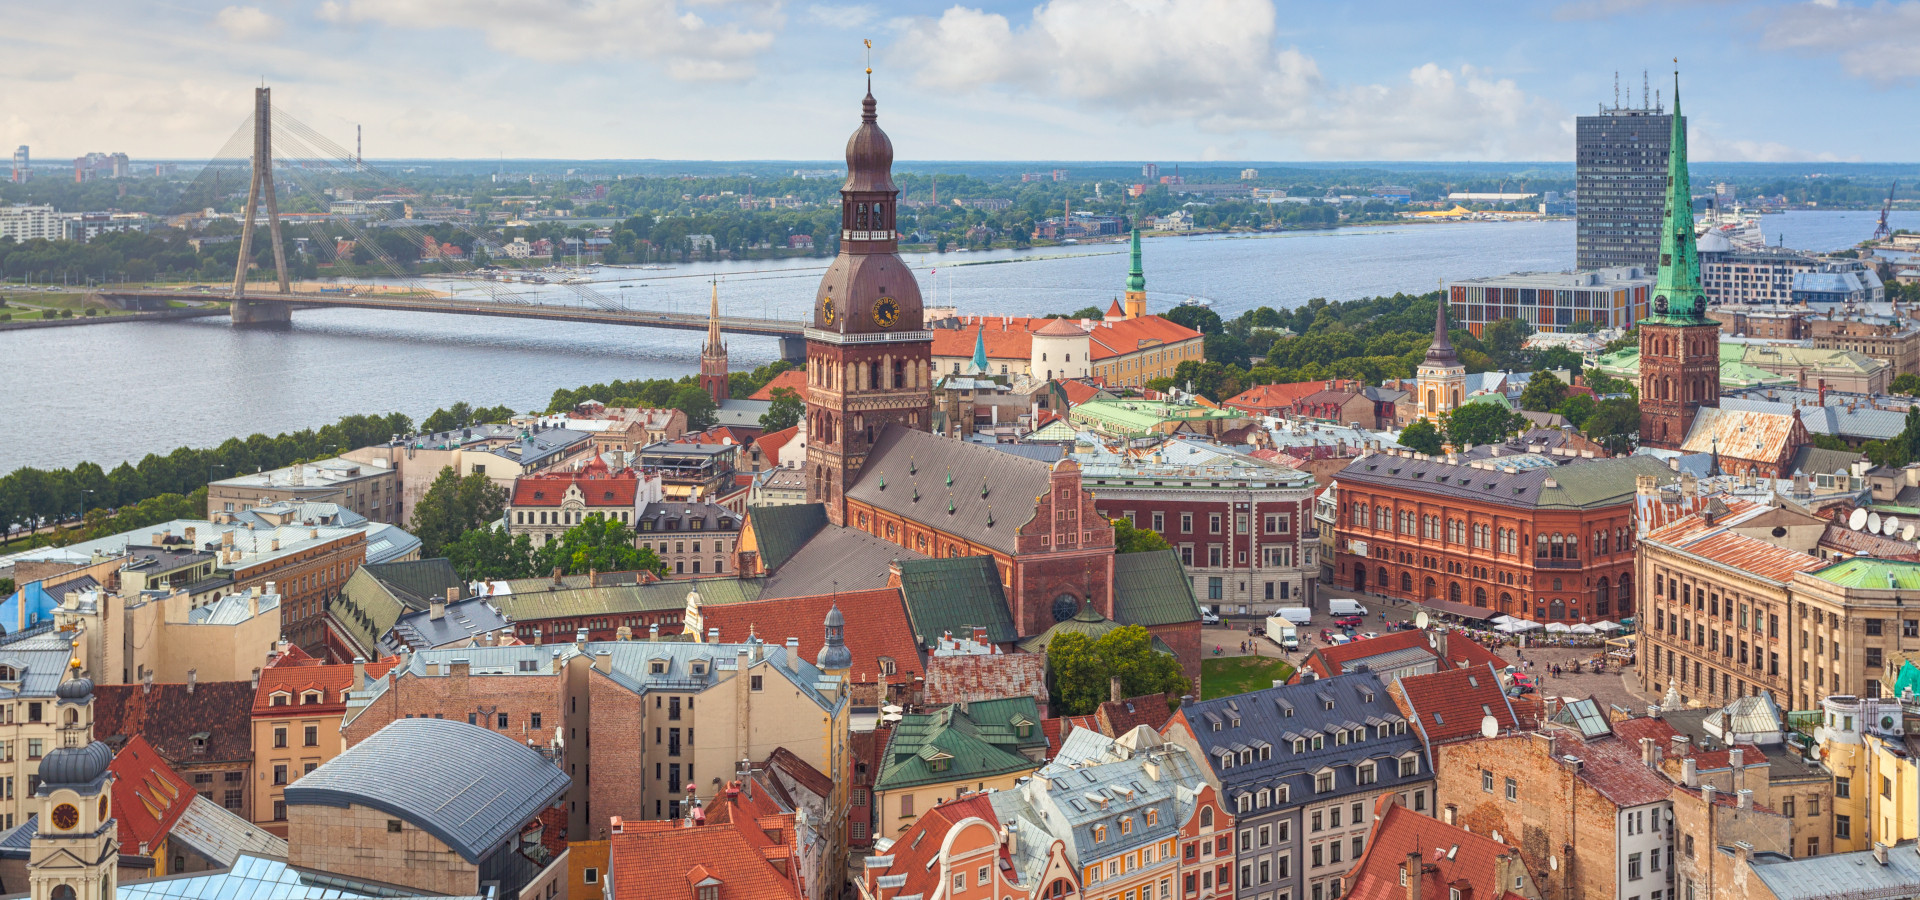 Blick über das Zentrum von Riga, Lettland, mit dem Rigaer Dom und dem Fluss Daugava im Hintergrund.